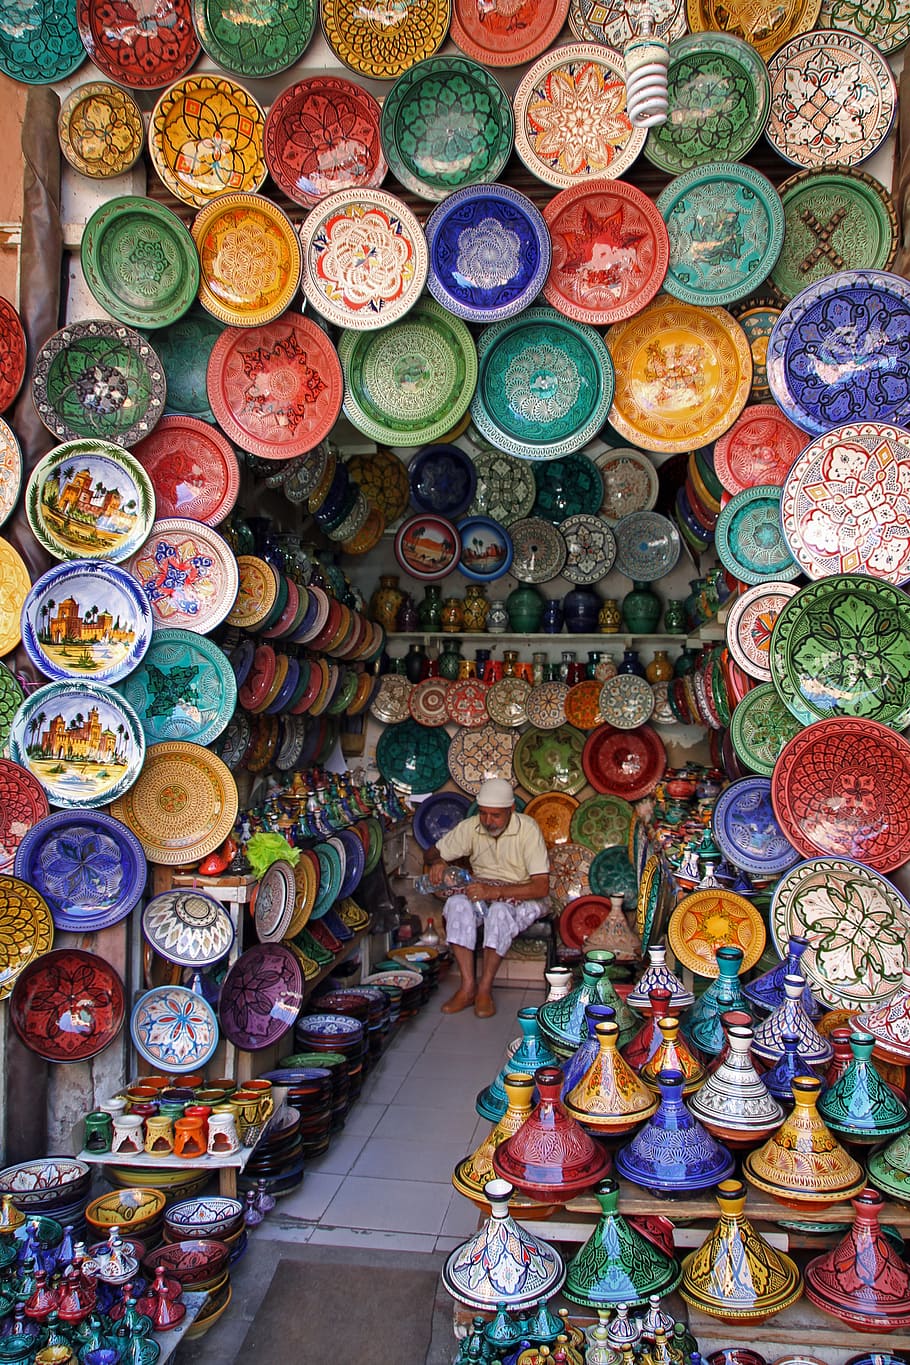 dekoratif, piring, vas banyak, marrakech, maroko, pasar, perjalanan, warna-warni, buatan tangan, budaya